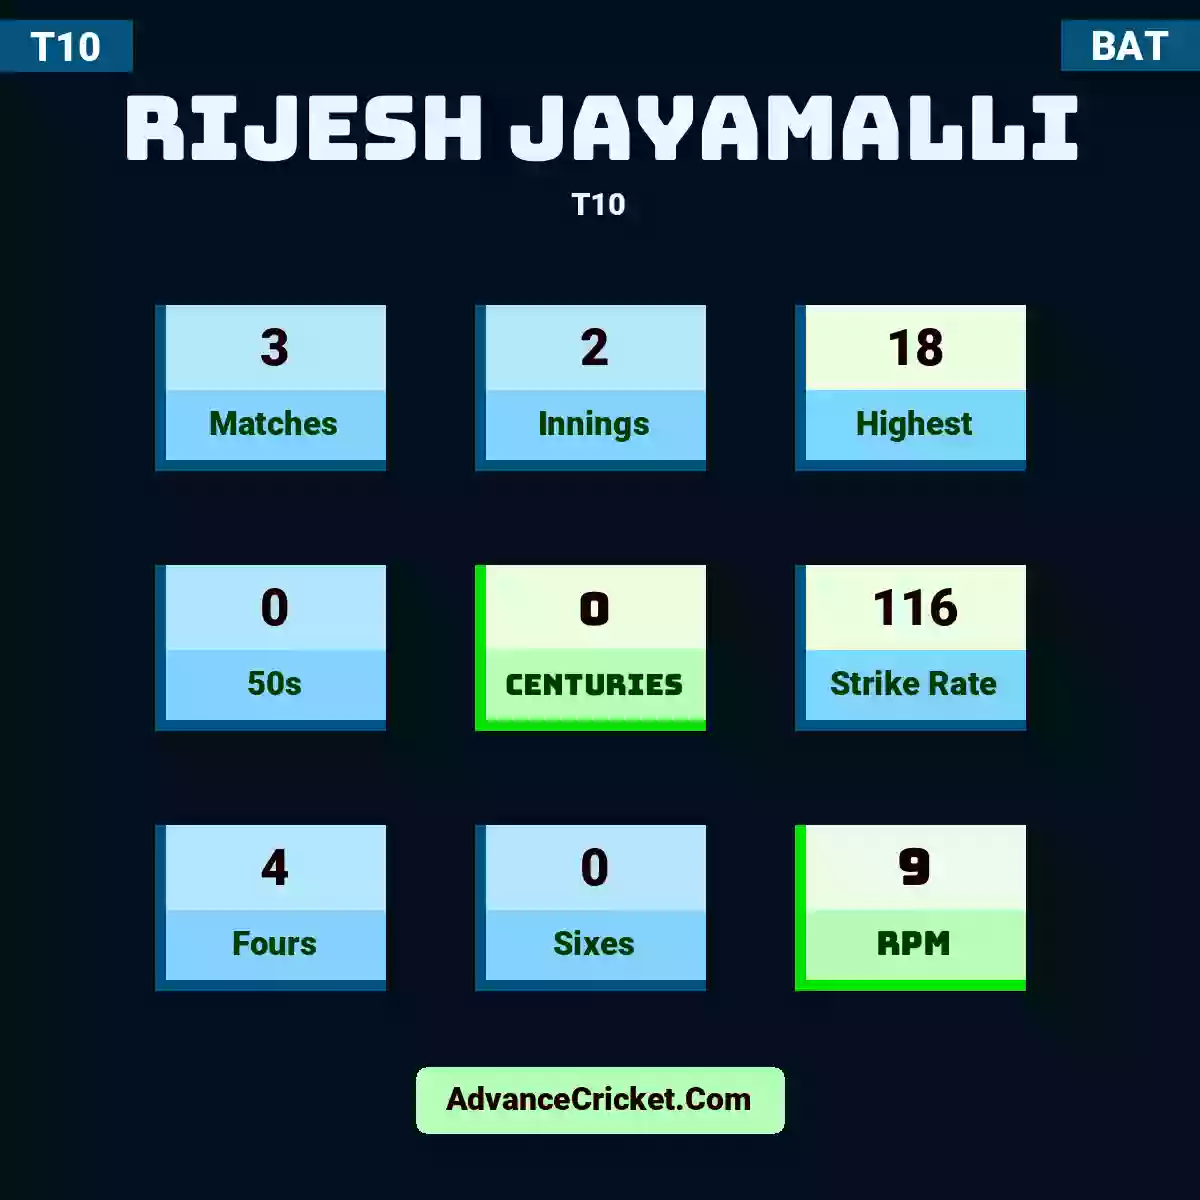 Rijesh Jayamalli T10 , Rijesh Jayamalli played 3 matches, scored 18 runs as highest, 0 half-centuries, and 0 centuries, with a strike rate of 116. R.Jayamalli hit 4 fours and 0 sixes, with an RPM of 9.